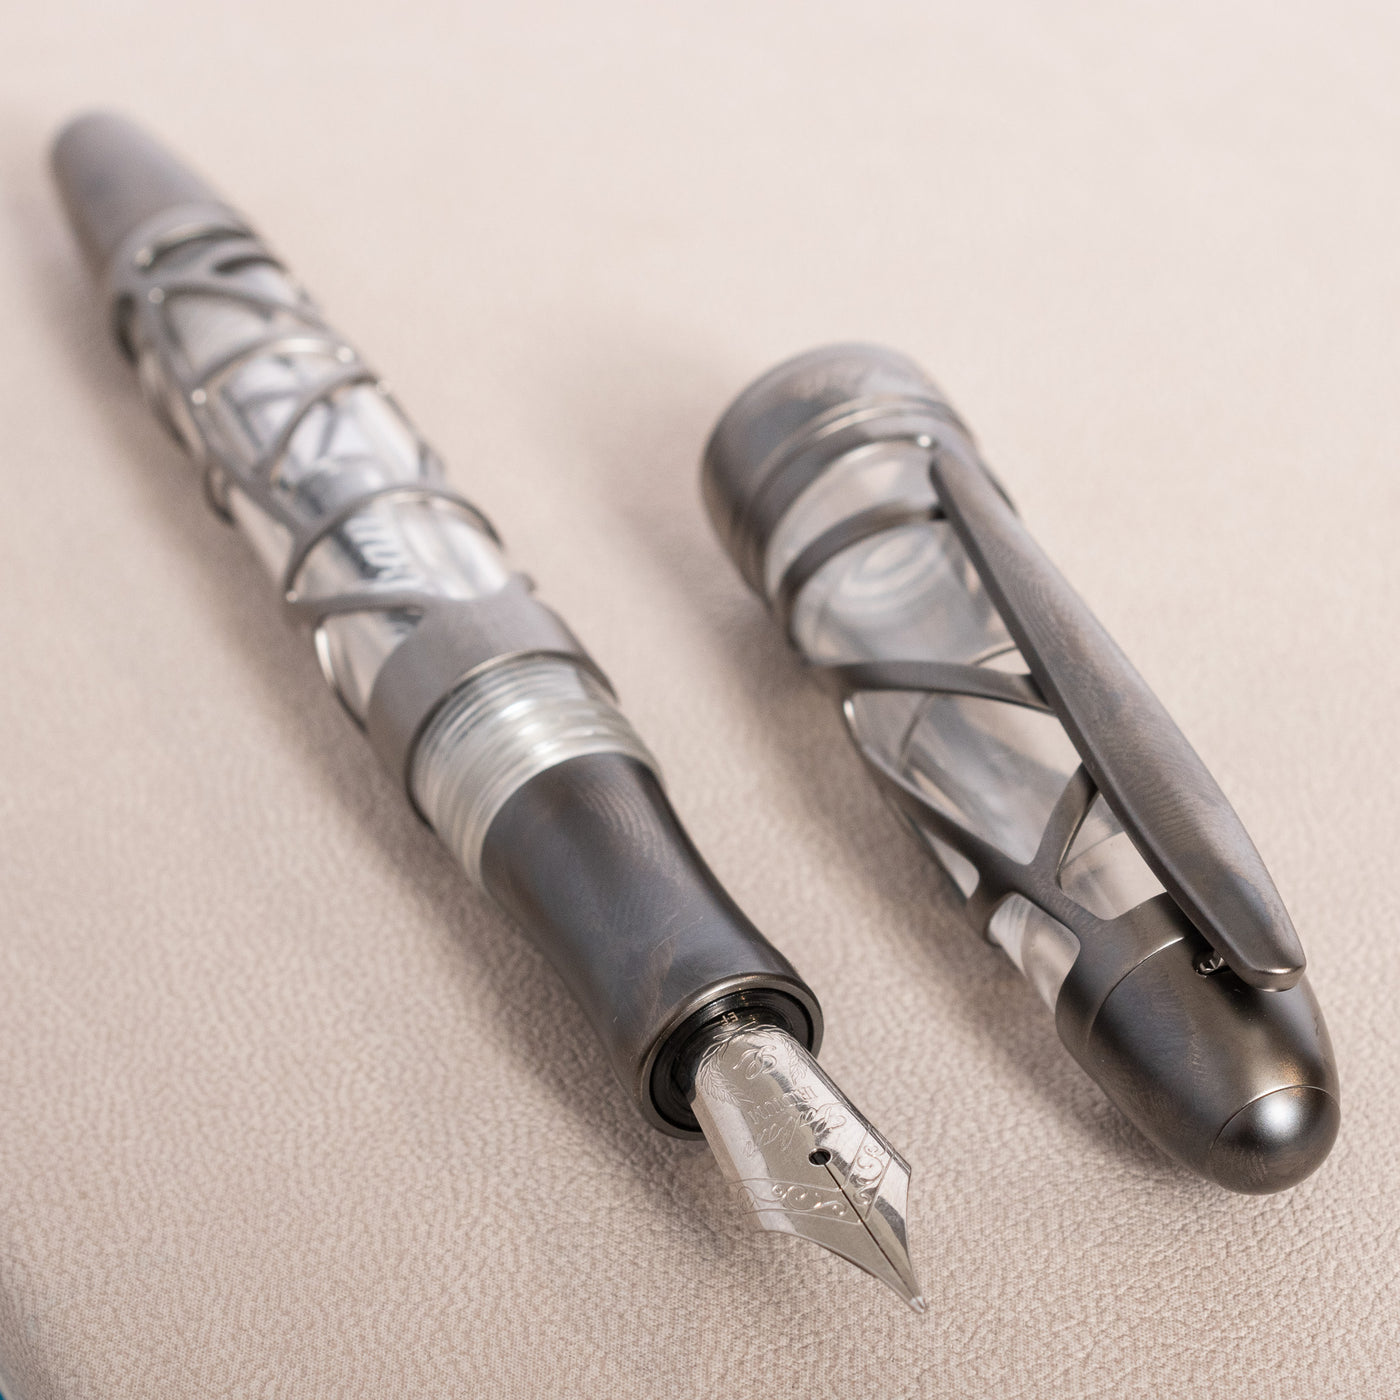 Laban Skeleton Fountain Pen - Gunmetal stainless steel nib